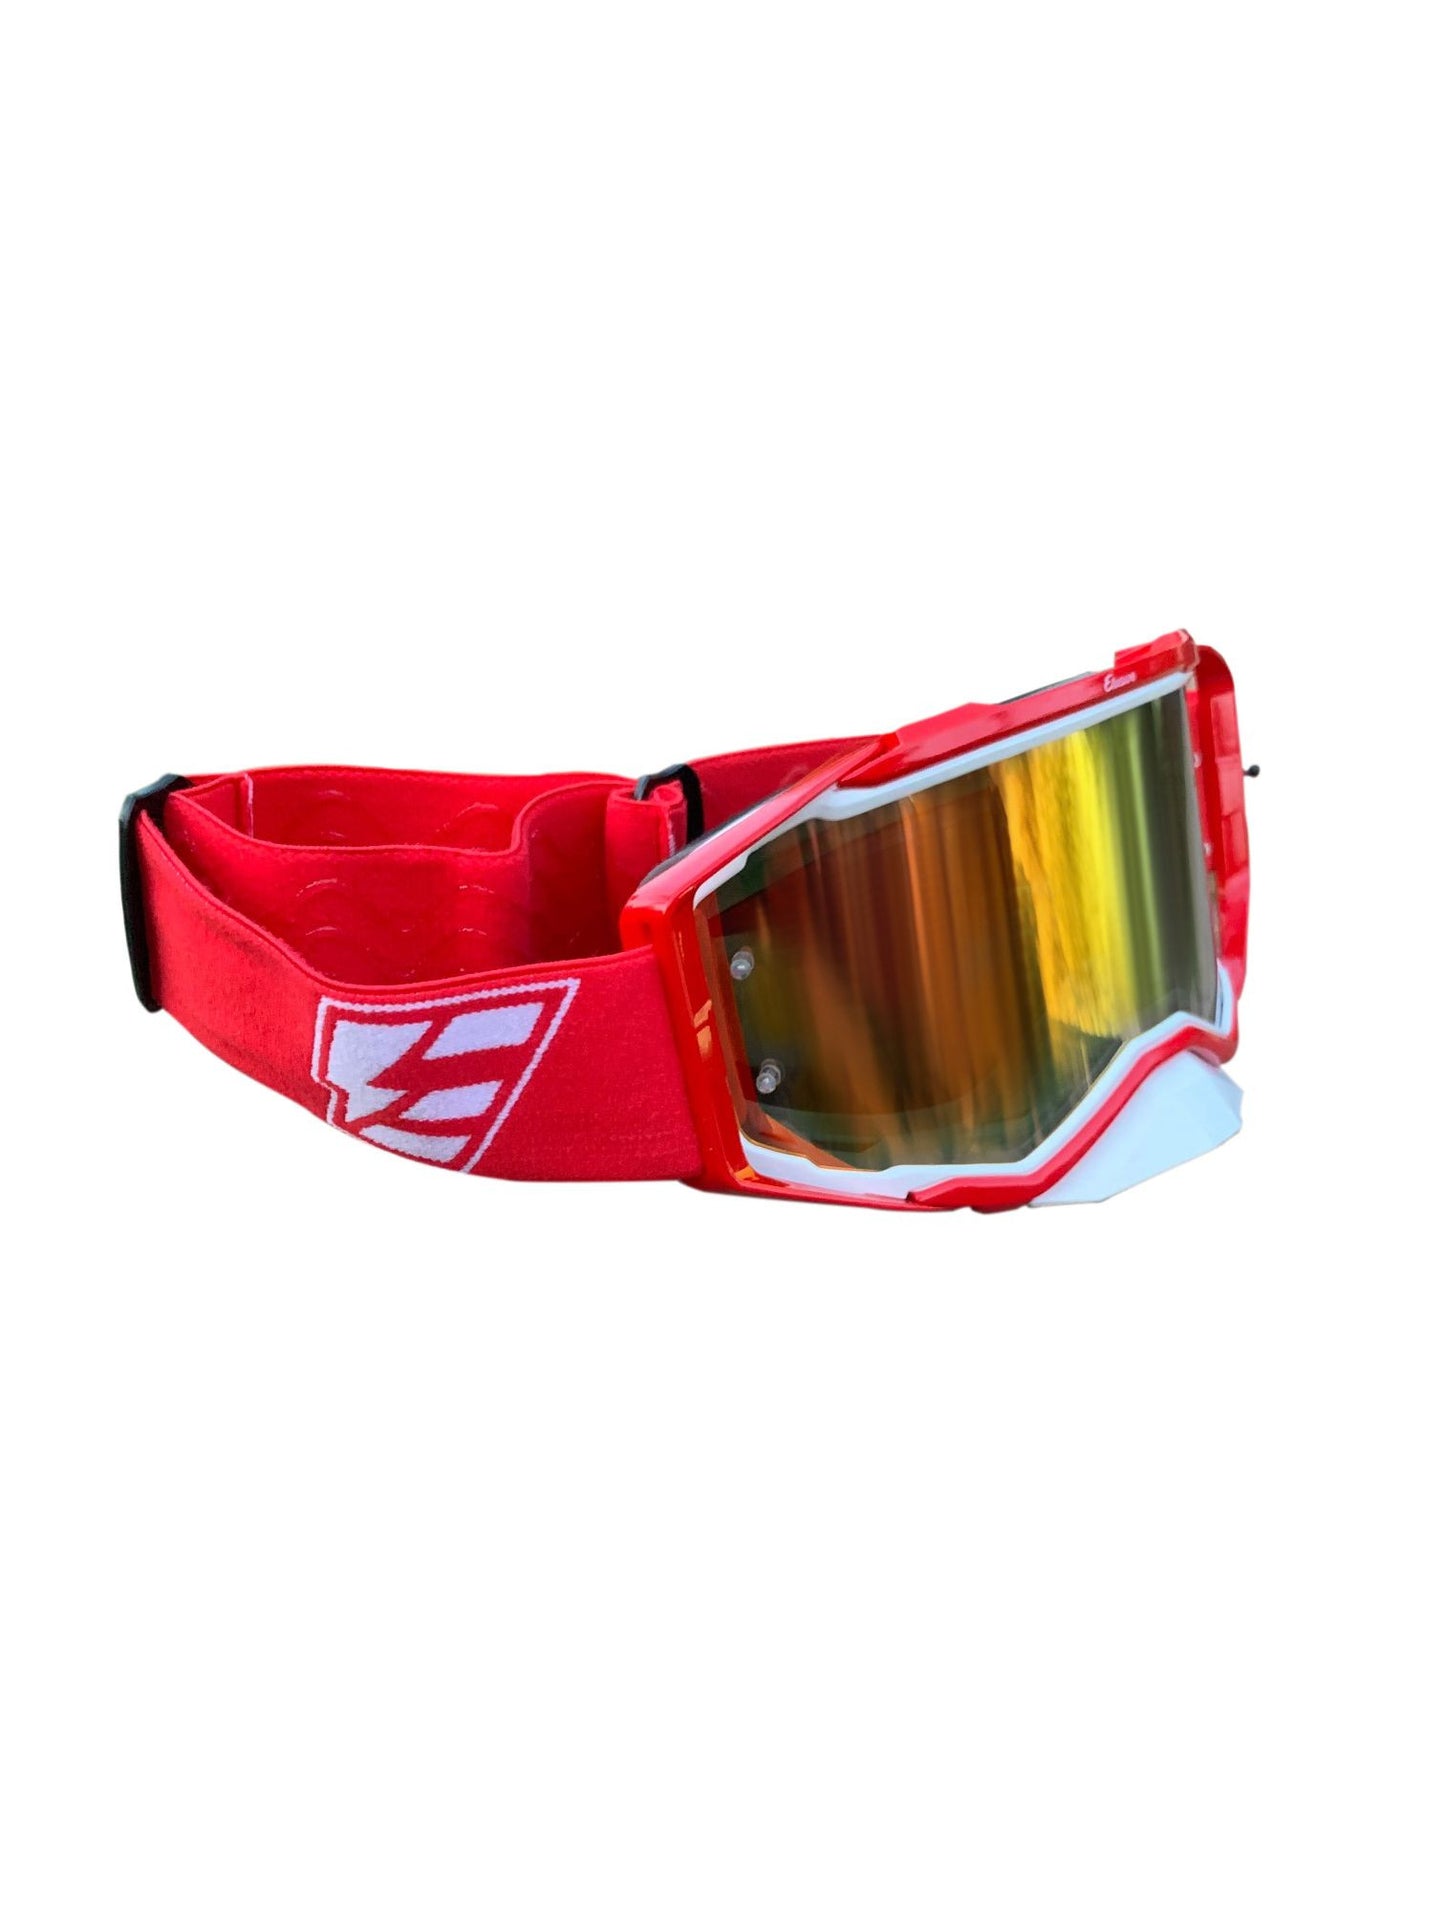 Elusive Goggles. Red/white